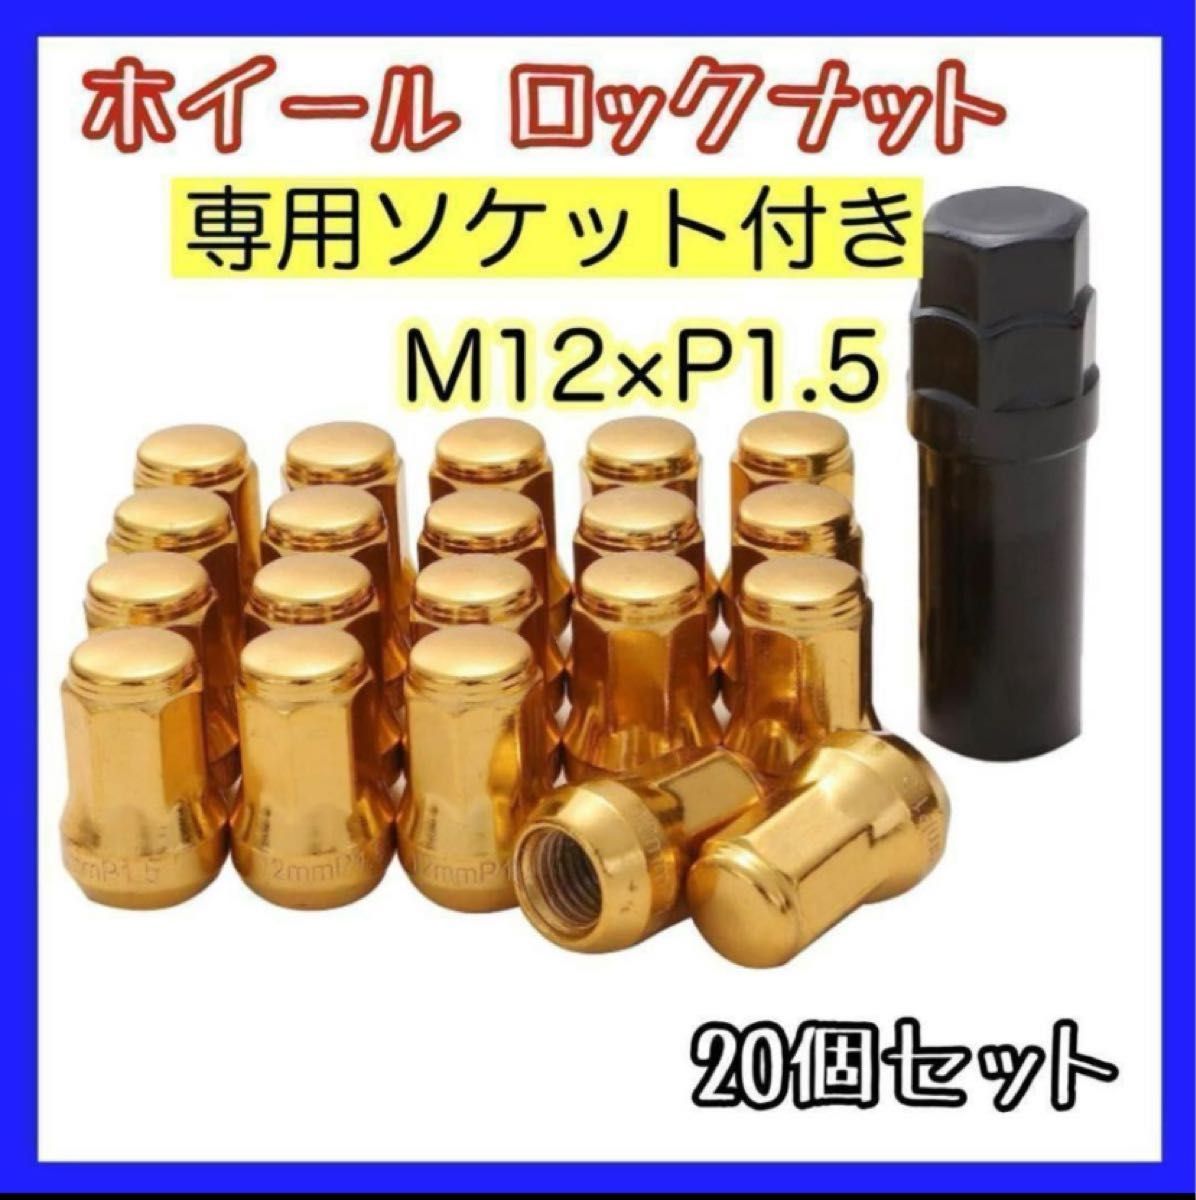 【盗難防止】ロックナット 20個  スチール P1.5 専用ソケット付 ゴールド